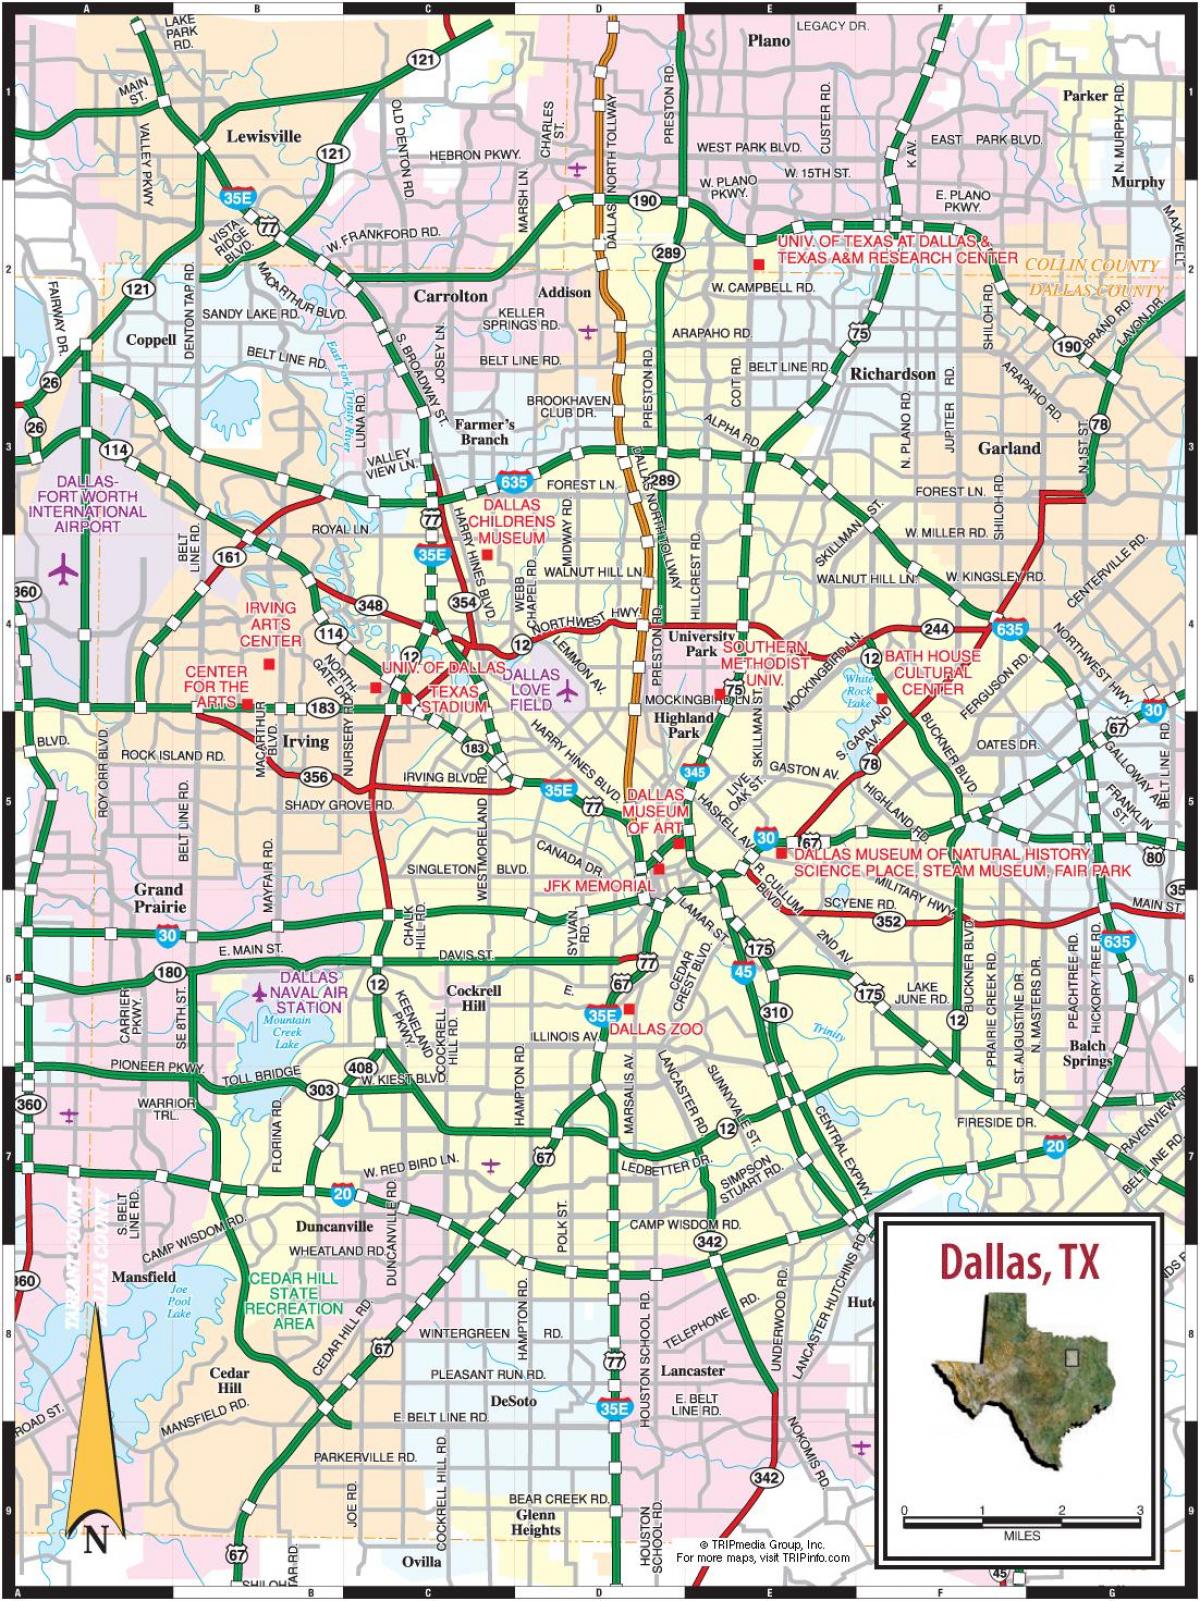 Dallas roads map